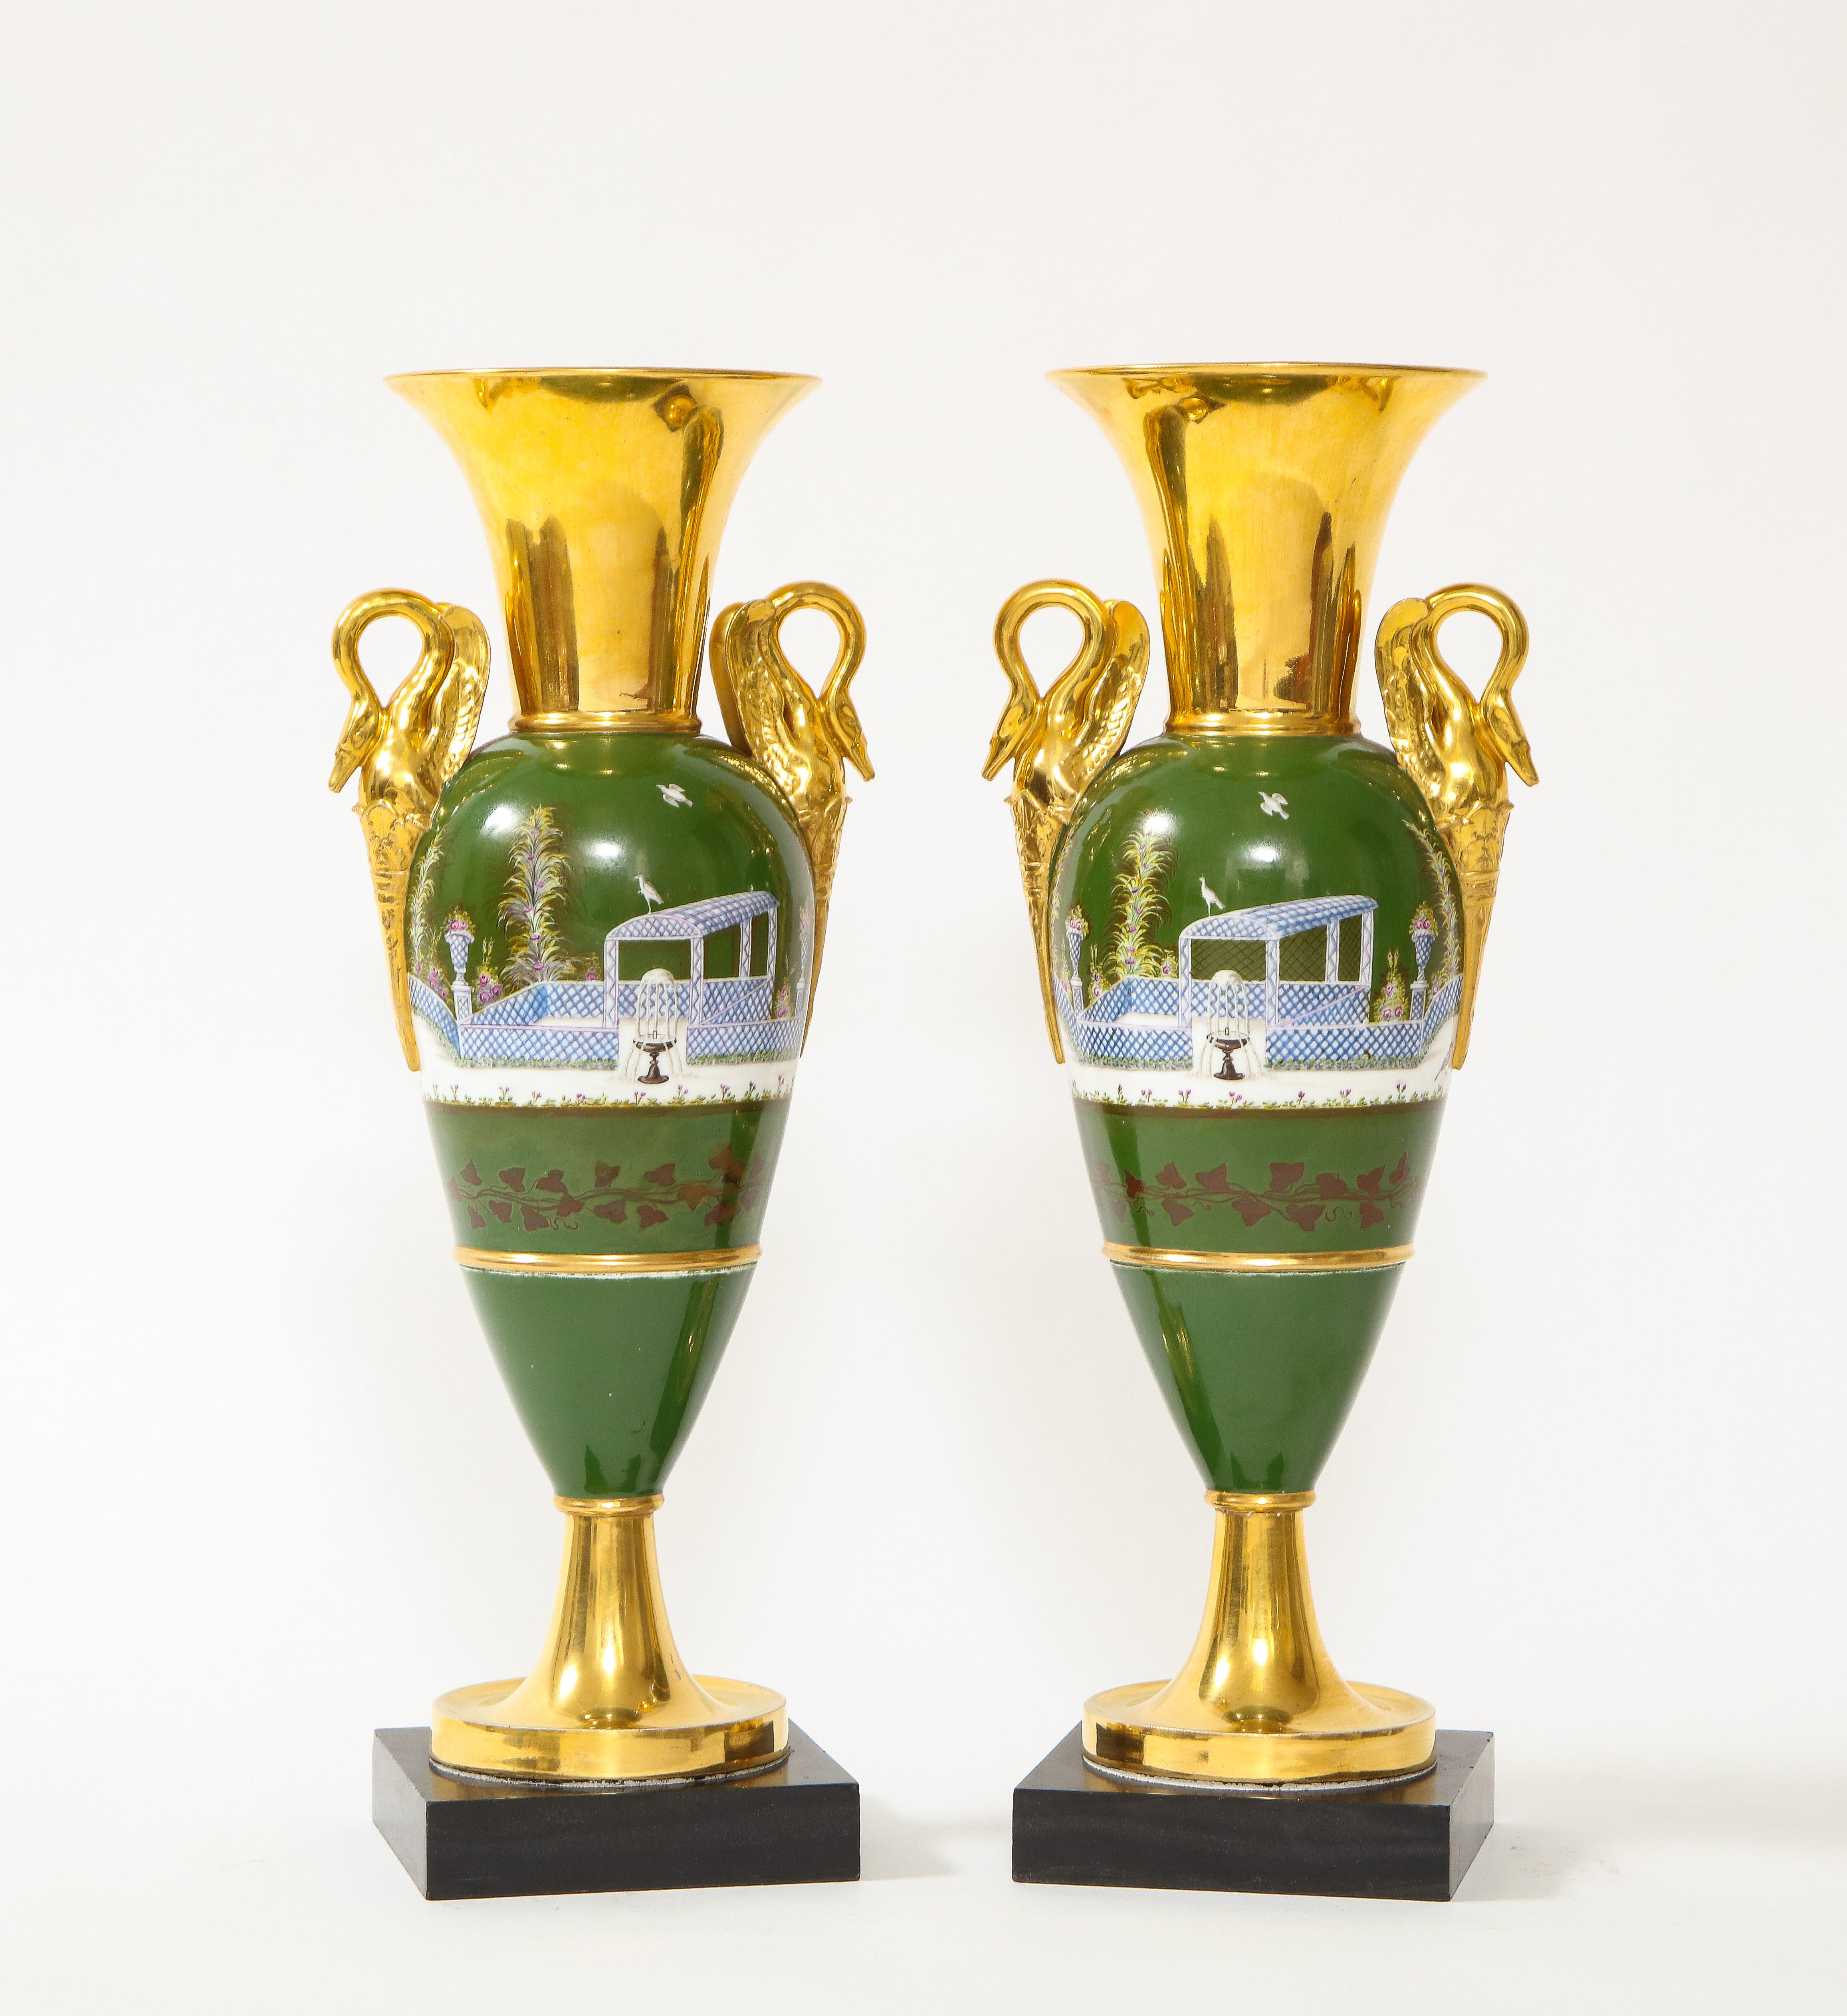 Ein feines Paar französischer Porzellanvasen mit Schwanengriff aus der Empirezeit des 19. Jahrhunderts. Jede ist wunderschön handbemalt mit grünem Grund und mit 24-karätigem Gold um den Hals, die Griffe und den Boden verziert. Die Vasen haben die